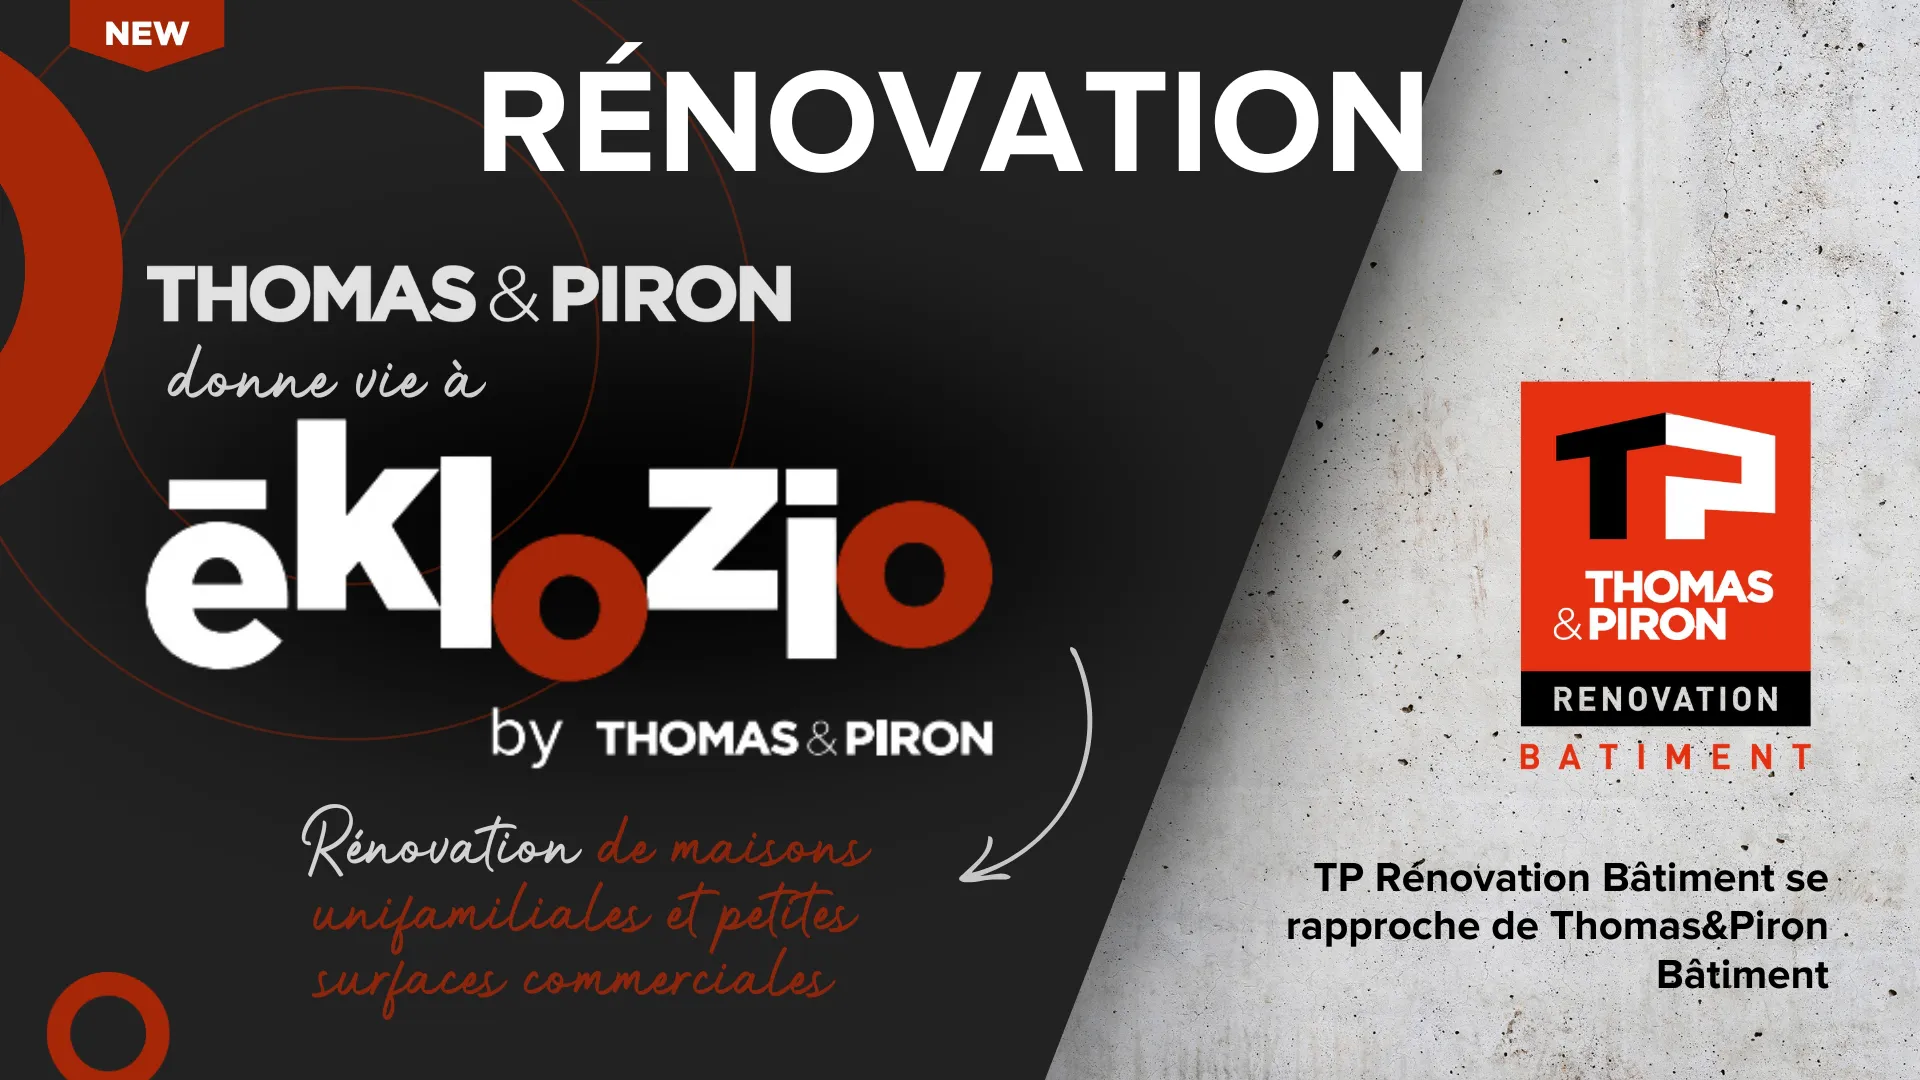 Thomas & Piron crée Eklozio et entend devenir un leader dans le segment d’avenir de la rénovation 